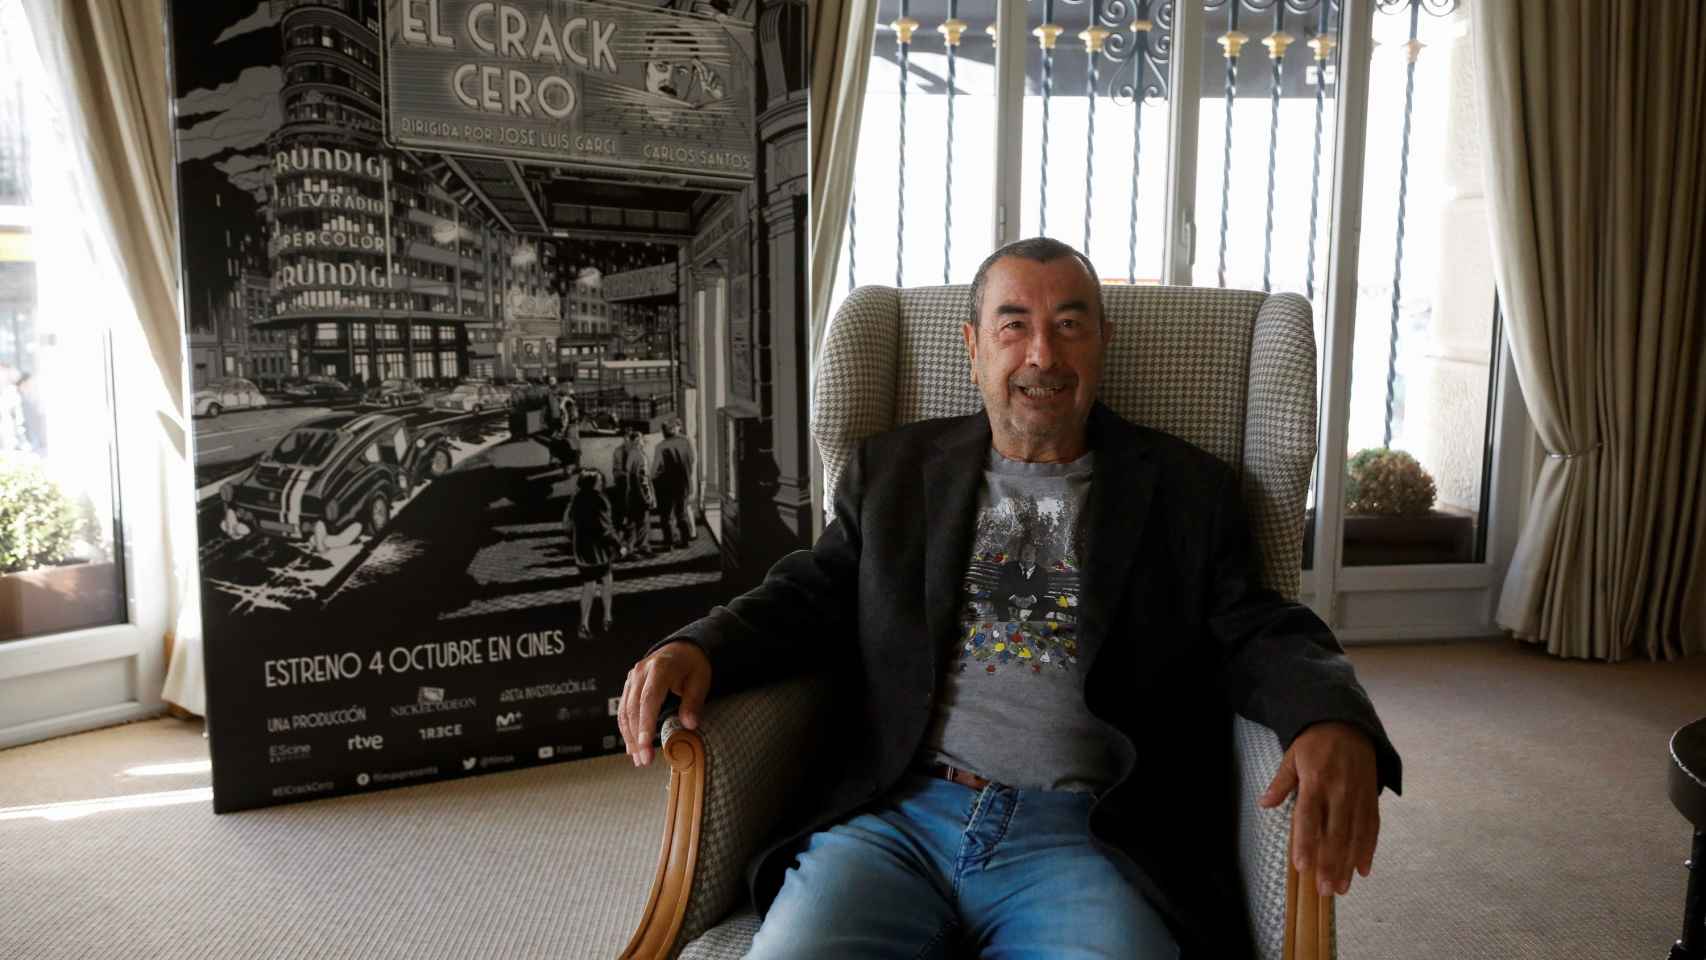 José Luis Garci estrena El crack cero.